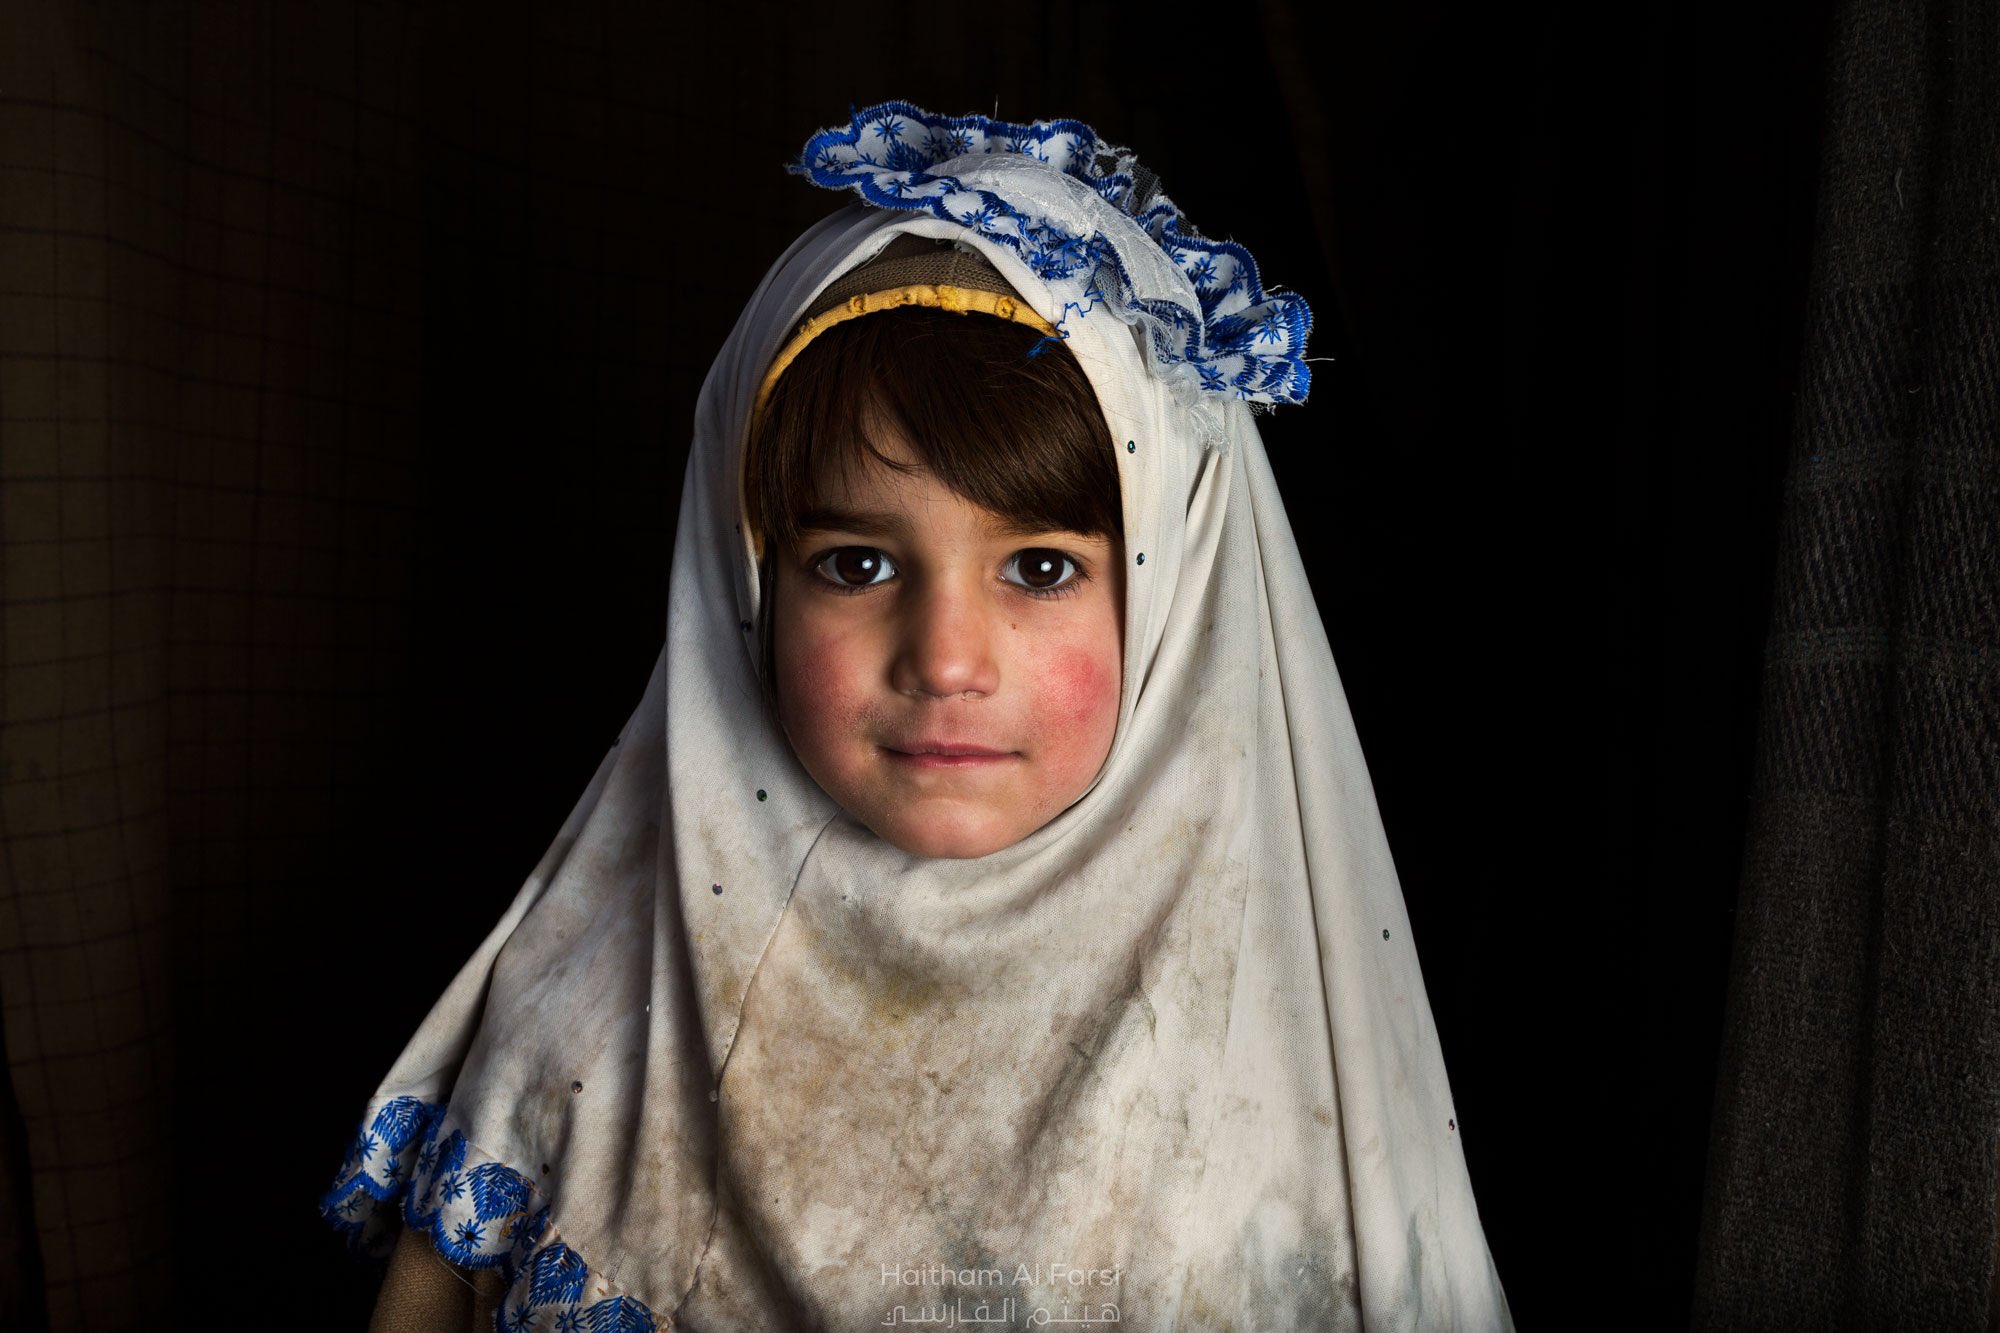 هيثم الفارسي on X: "طفلة كشميرية: الجمال و البساطة و البراءة A Kashmiri  girl: Beauty, simplicity and innocence #كشمير #هيثم_الفارسي #Kashmir  https://t.co/NARTxYVyt2" / X